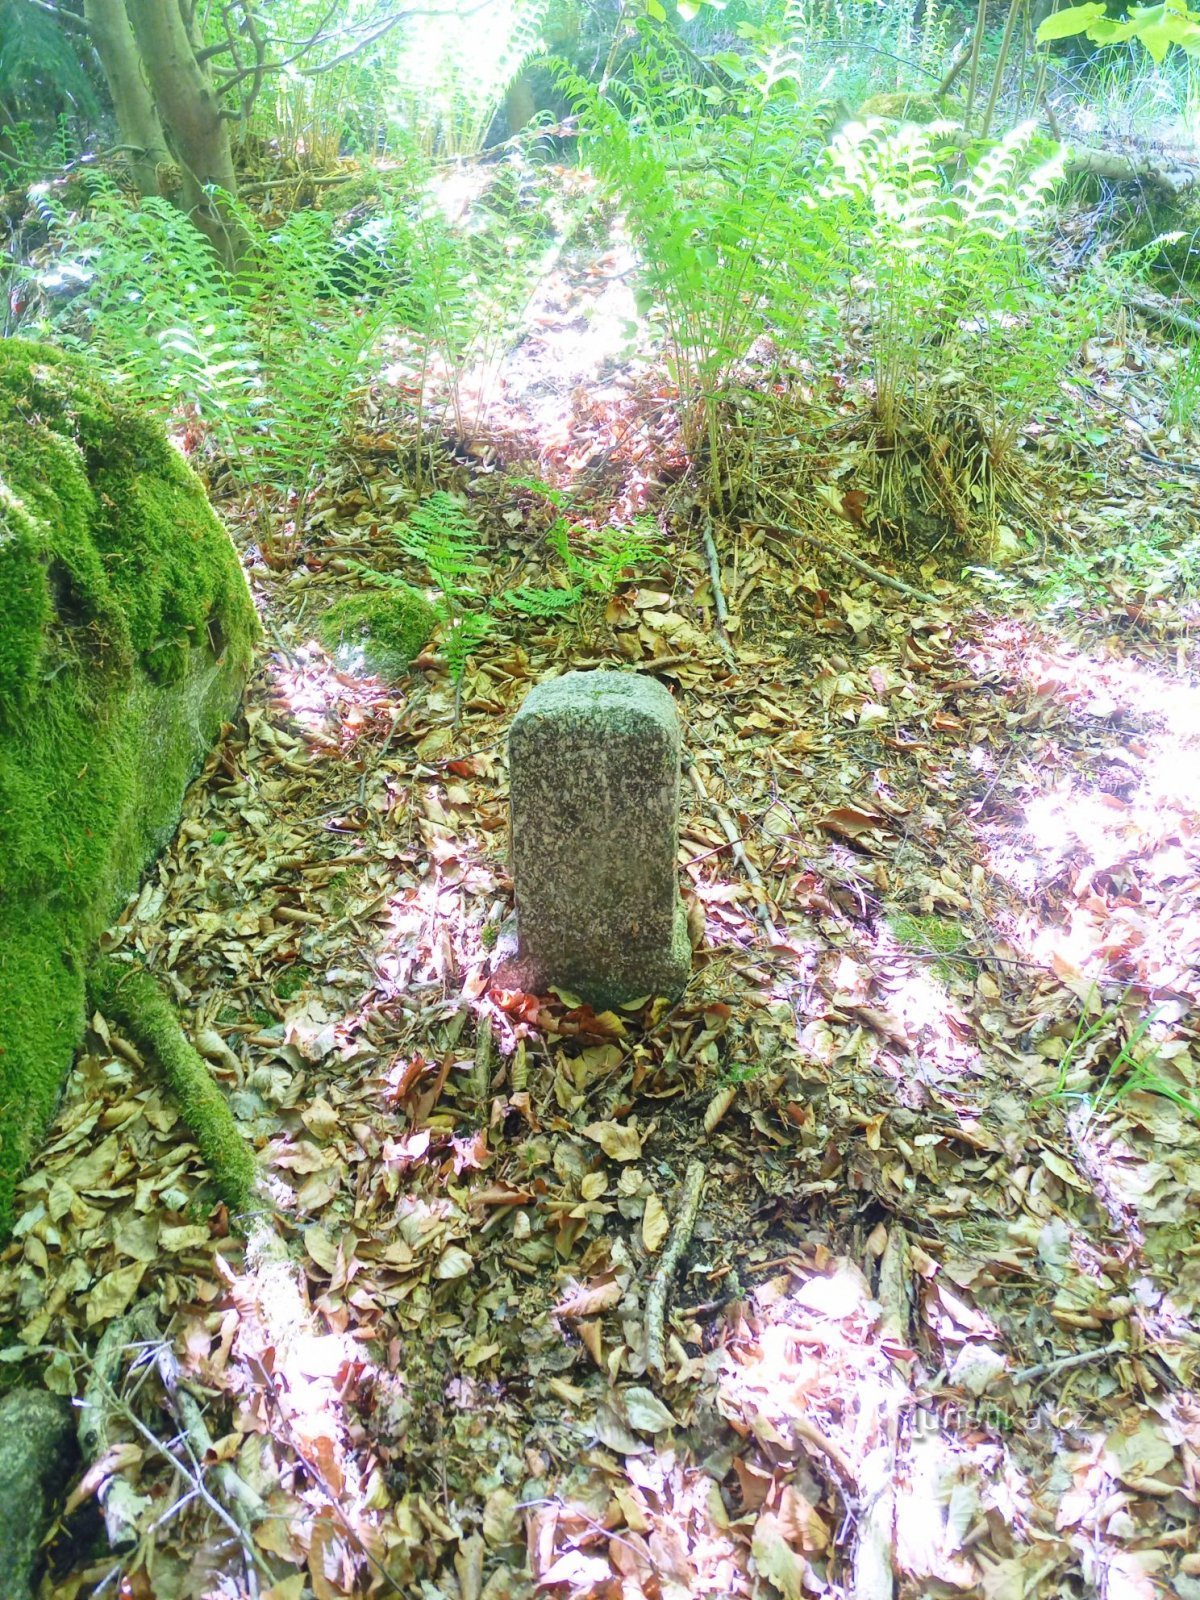 3. Kamnit mejnik z vklesanim križem v gozdu